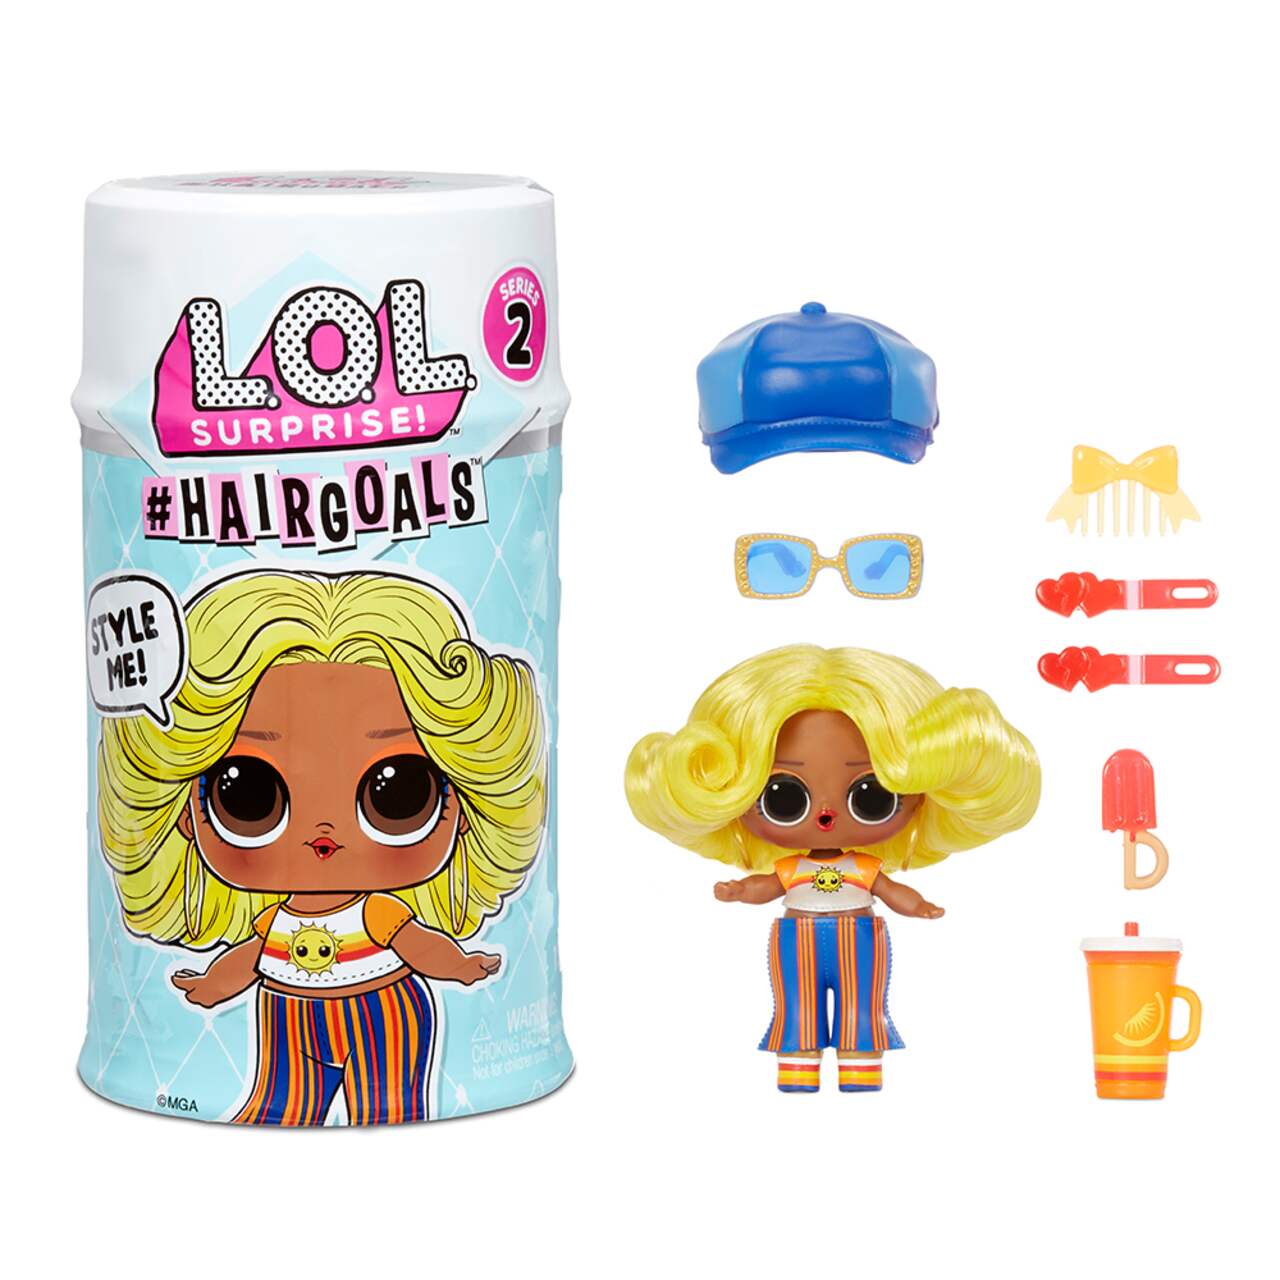 L.O.L. Surprise! Hairgoals Series 2 w/ 15 Surprises Tot Dolls For